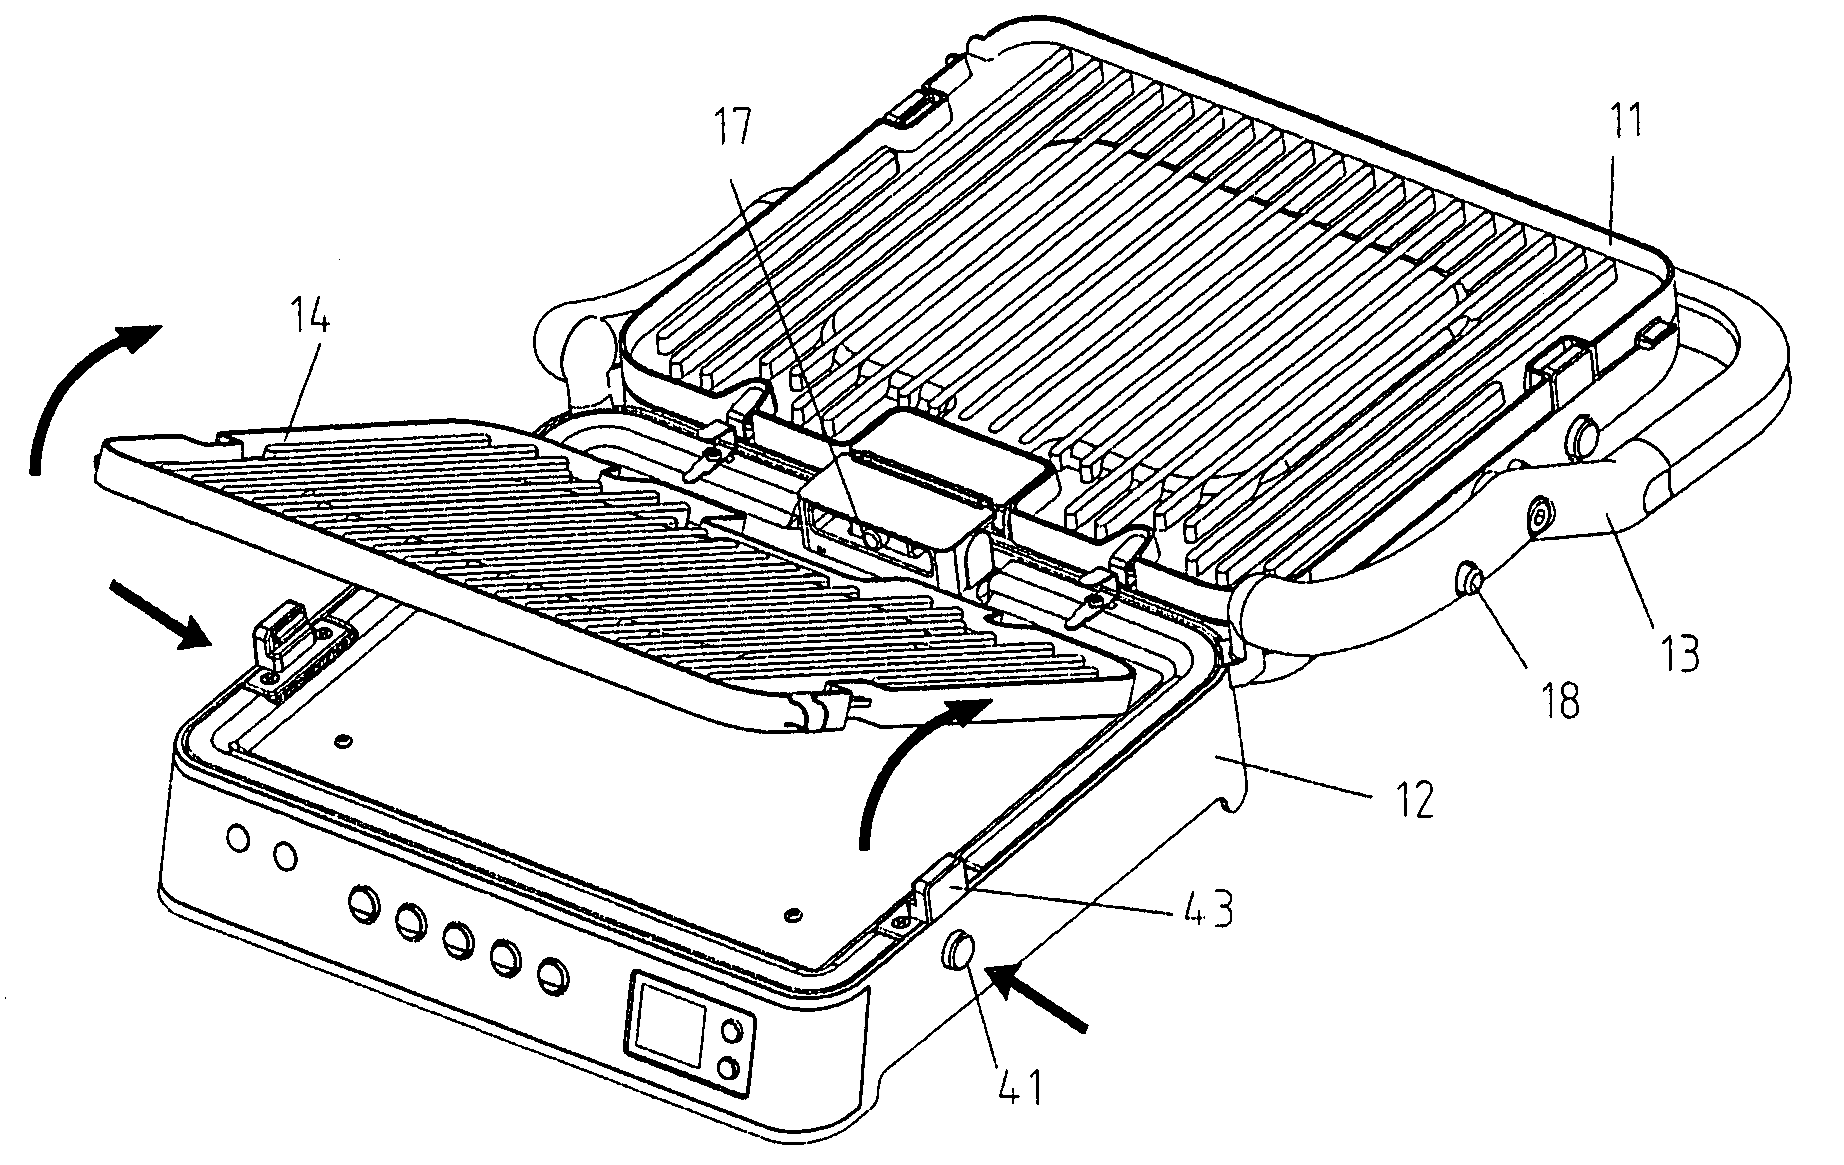 Portable multi-purpose electric oven